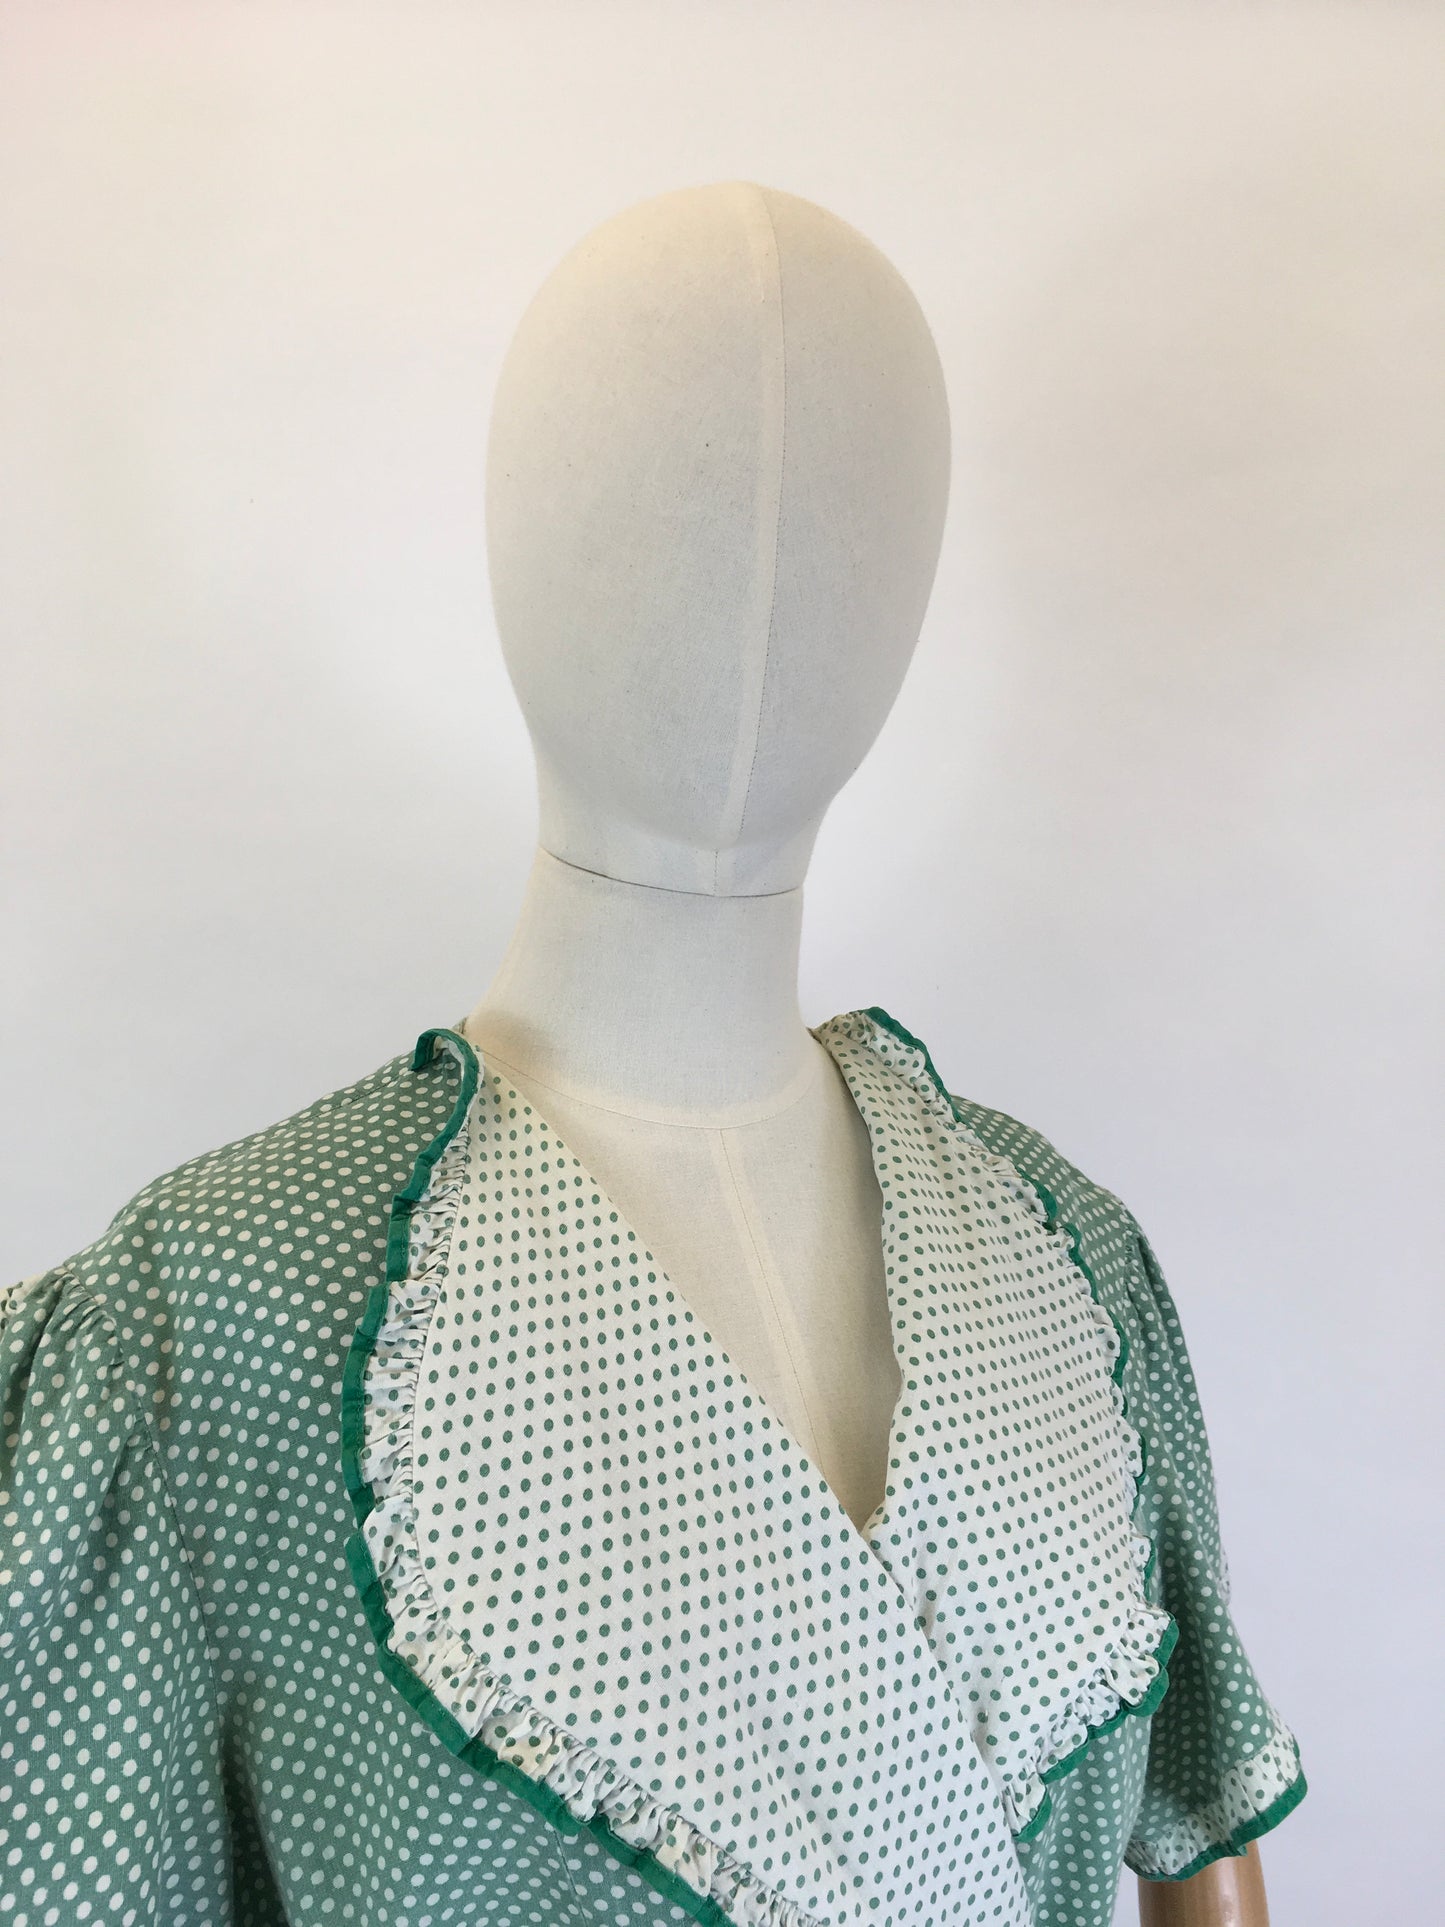 Original 1940’s SENSATIONAL Wrap House Dress - In A Fabulous Green & White Polka Dot